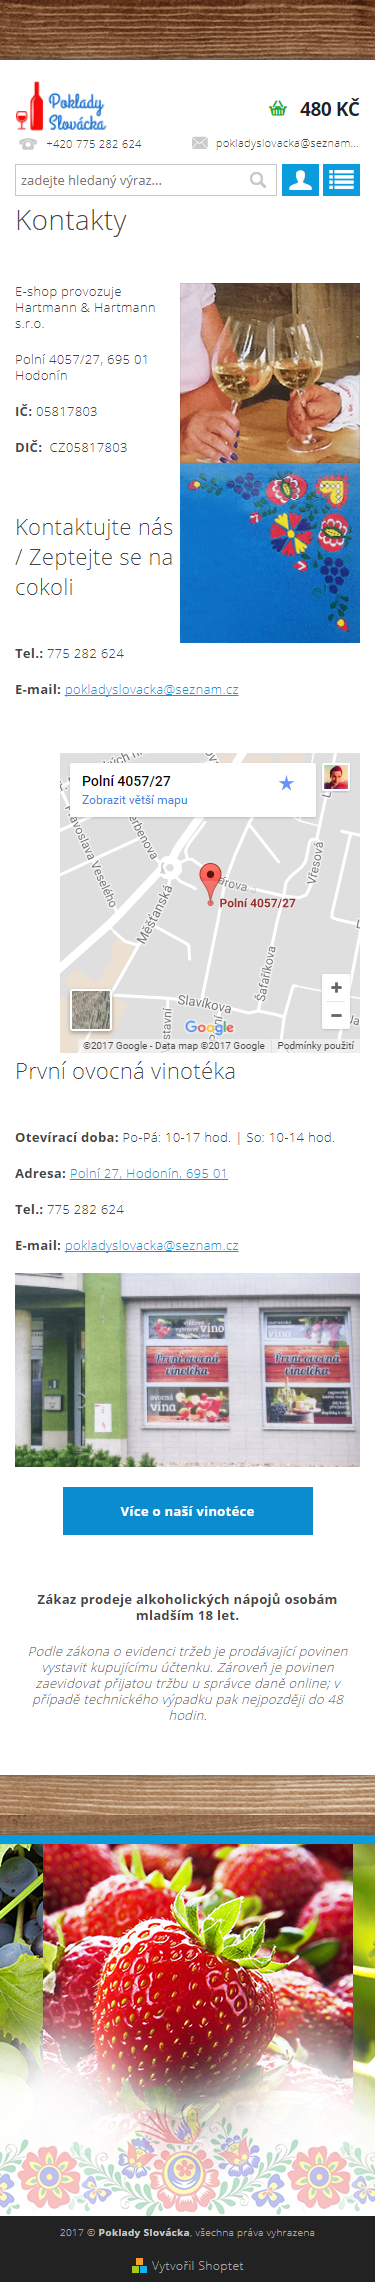 Tvorba eshopu Poklady Slovácka - Screenshot mobilní verze